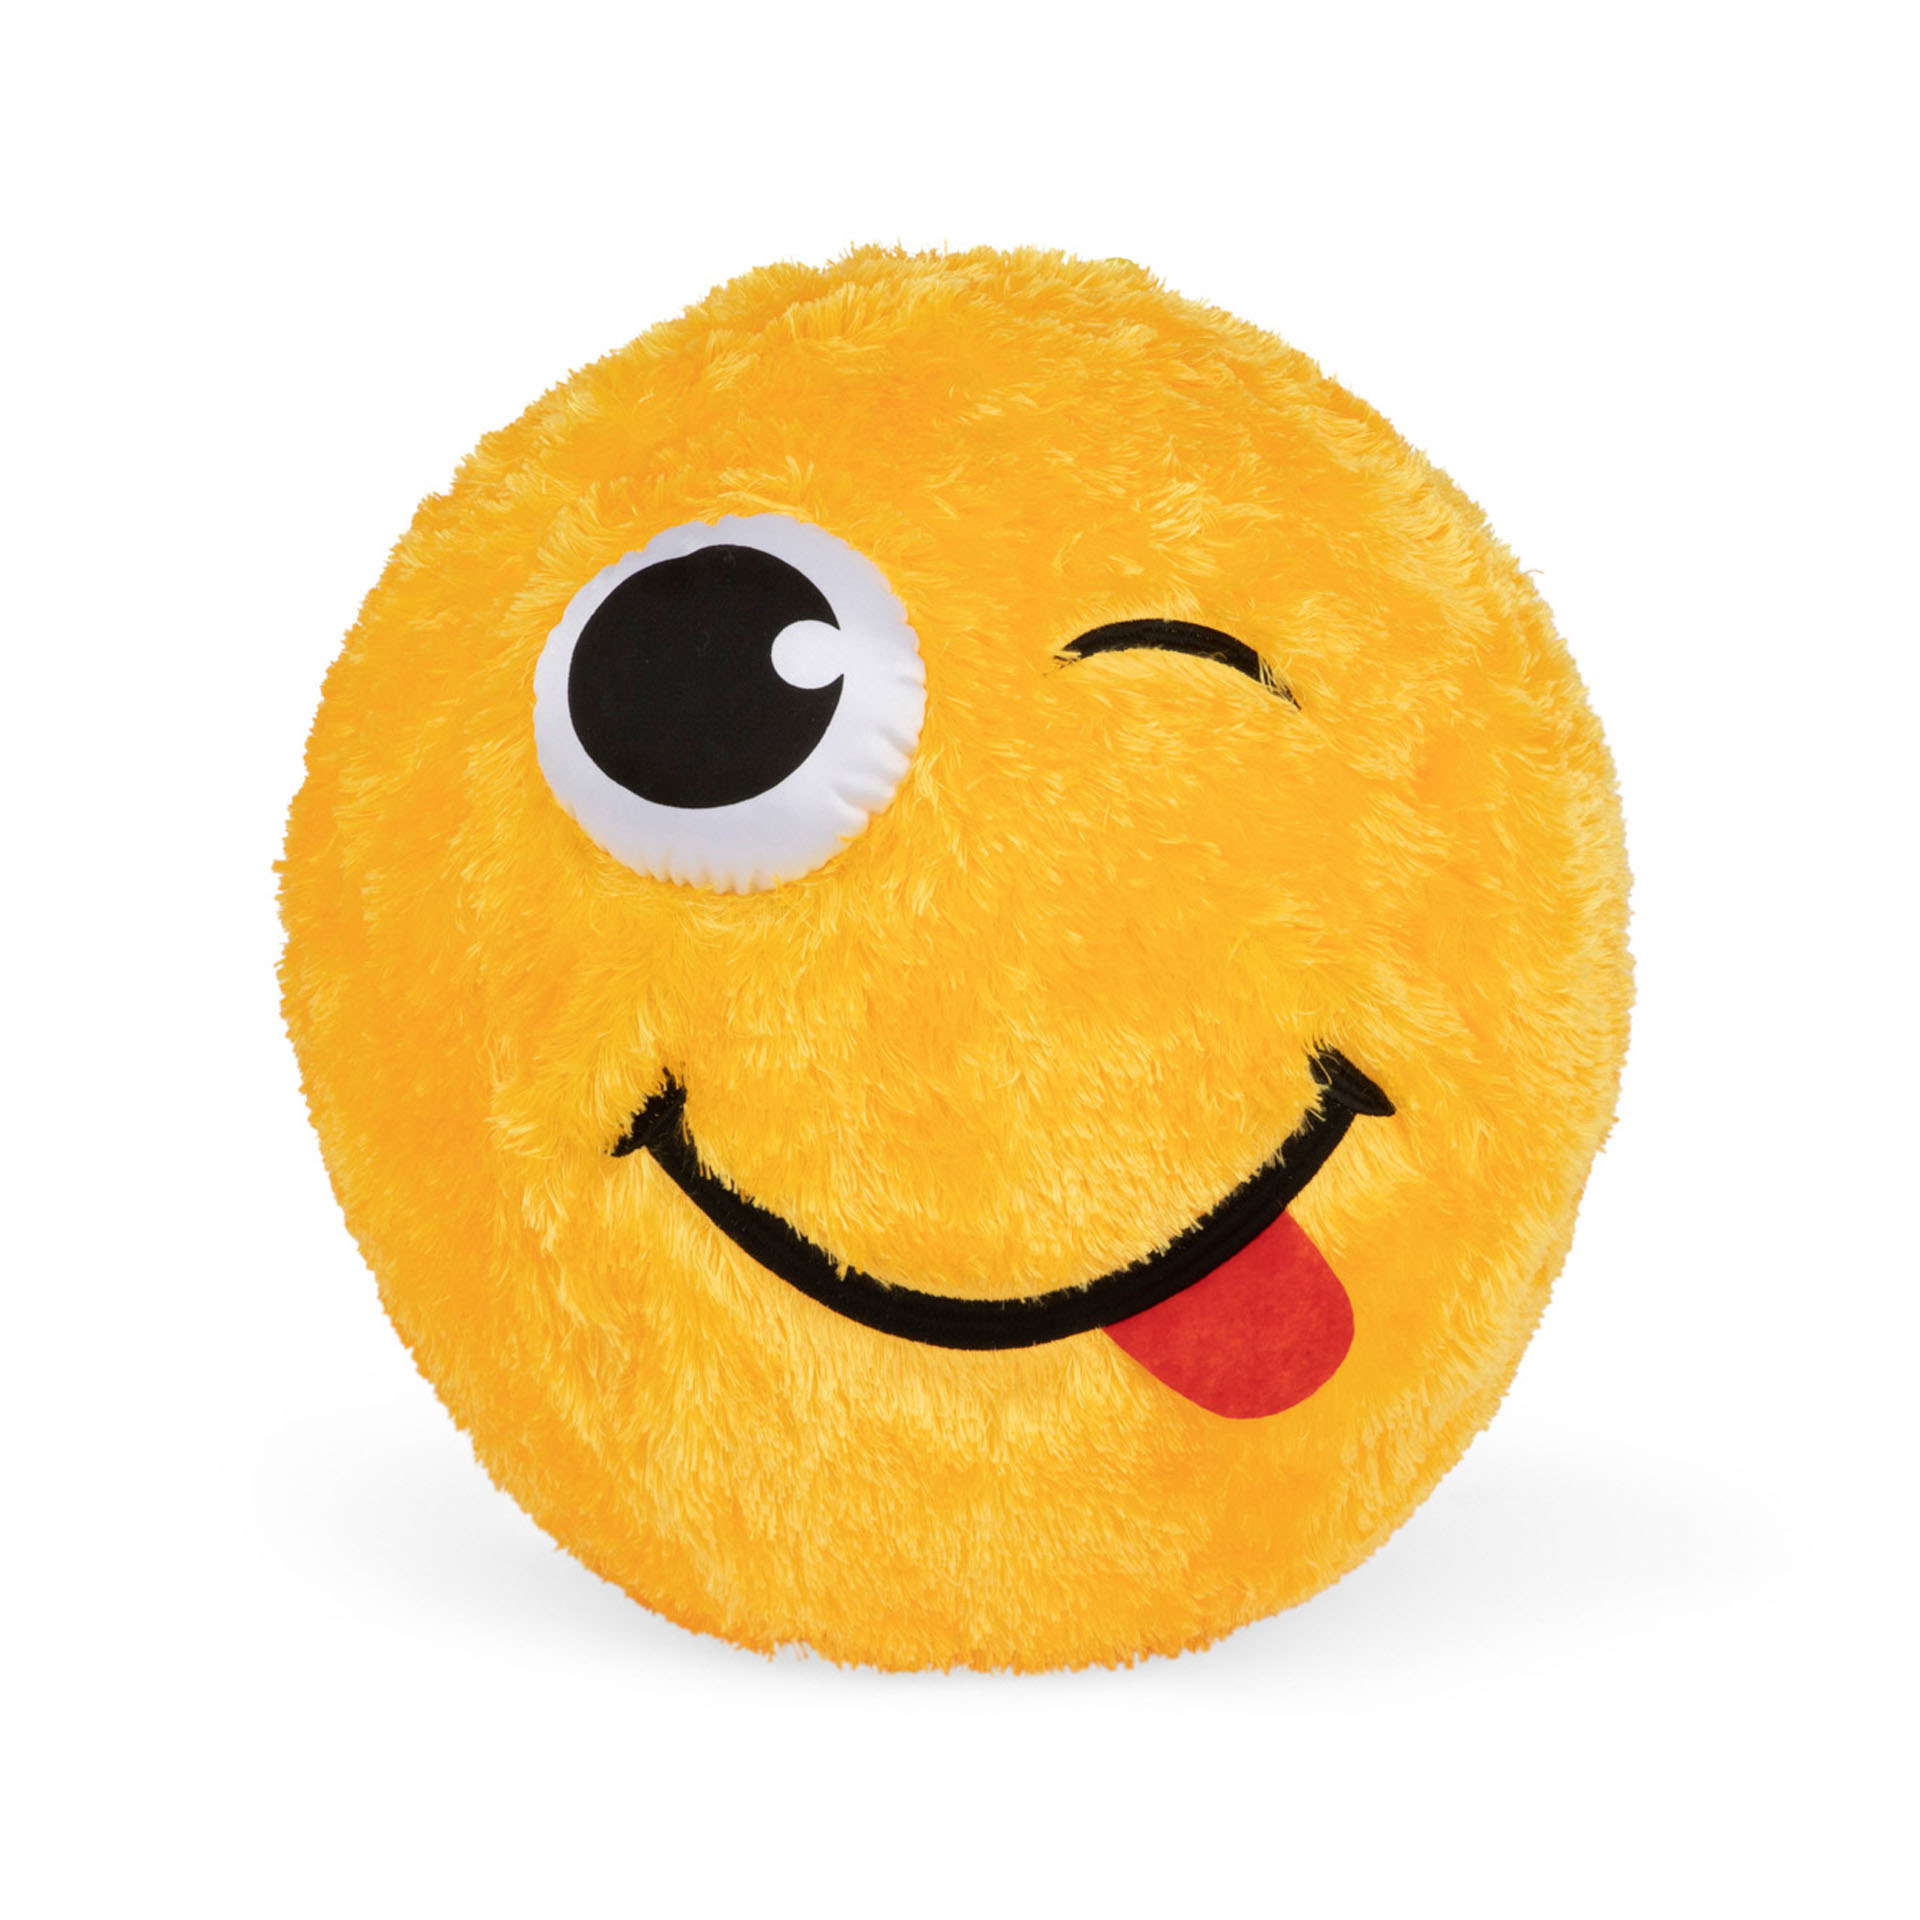 Maxi palla emoticon gialla 50 cm, , large